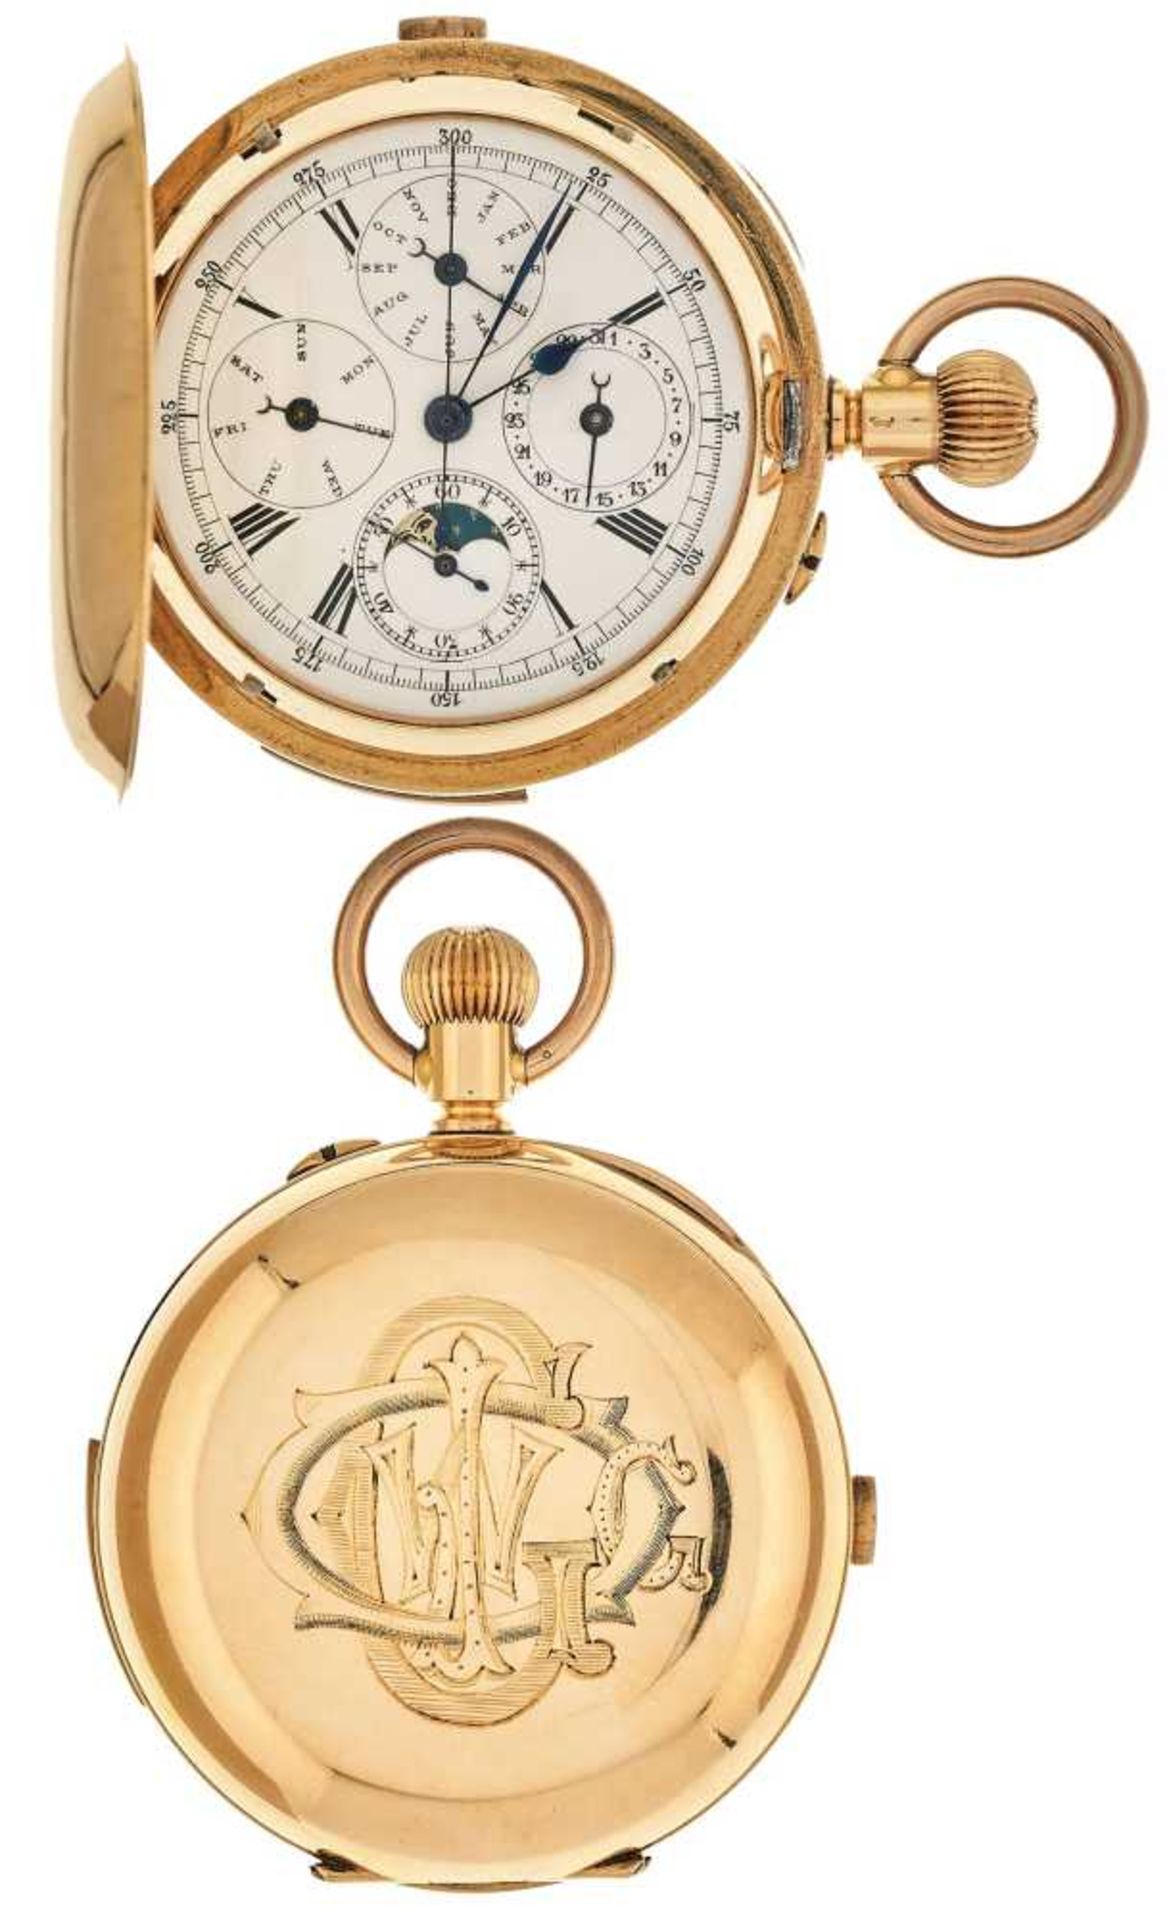 Grand Complication Chronograph Taschenuhr von etwa 1880. Ca. 55mm, 750er Rotgold, Handaufzug. Emaill